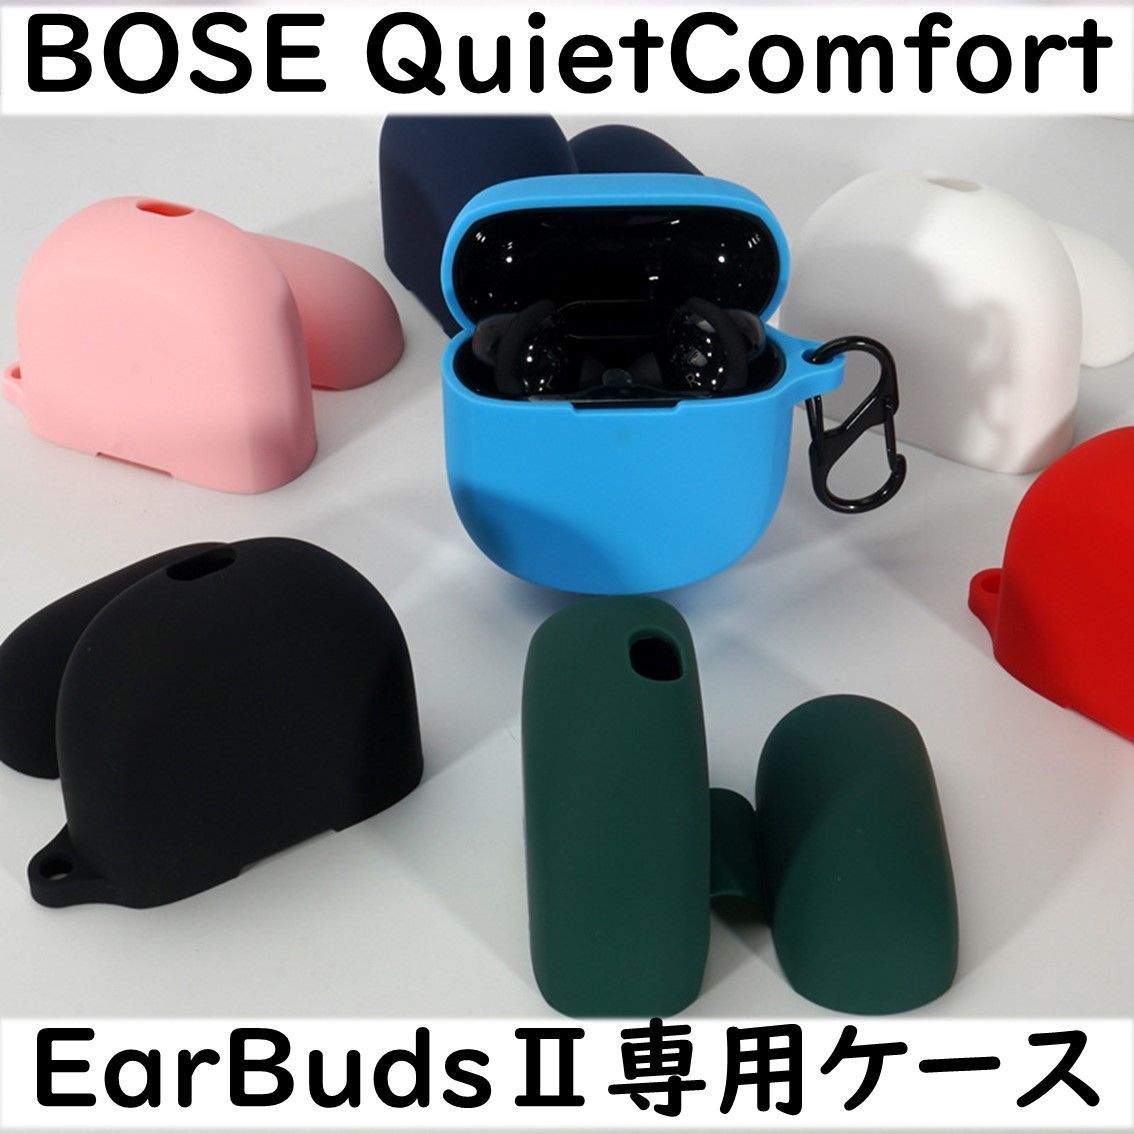 【新品未開封】Bose quietcomfort earbudsⅡ